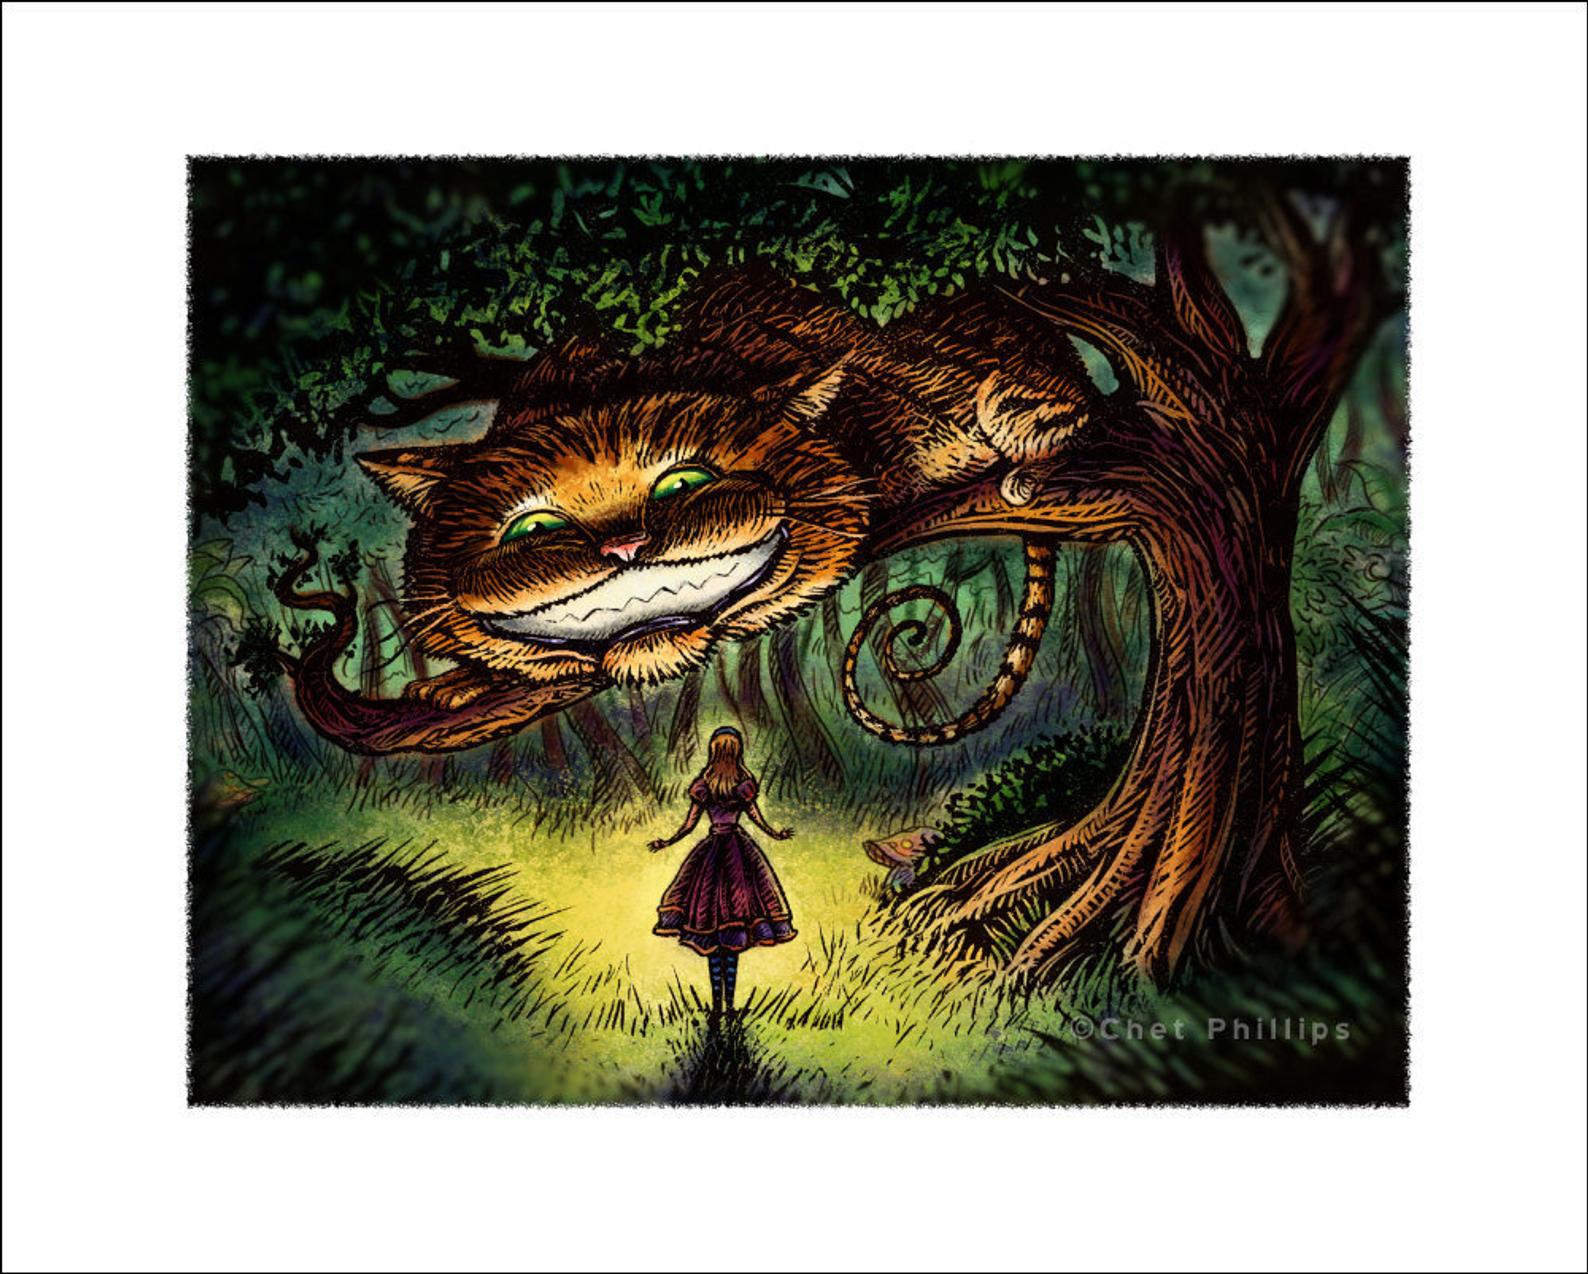 Alice 8 x 10" print